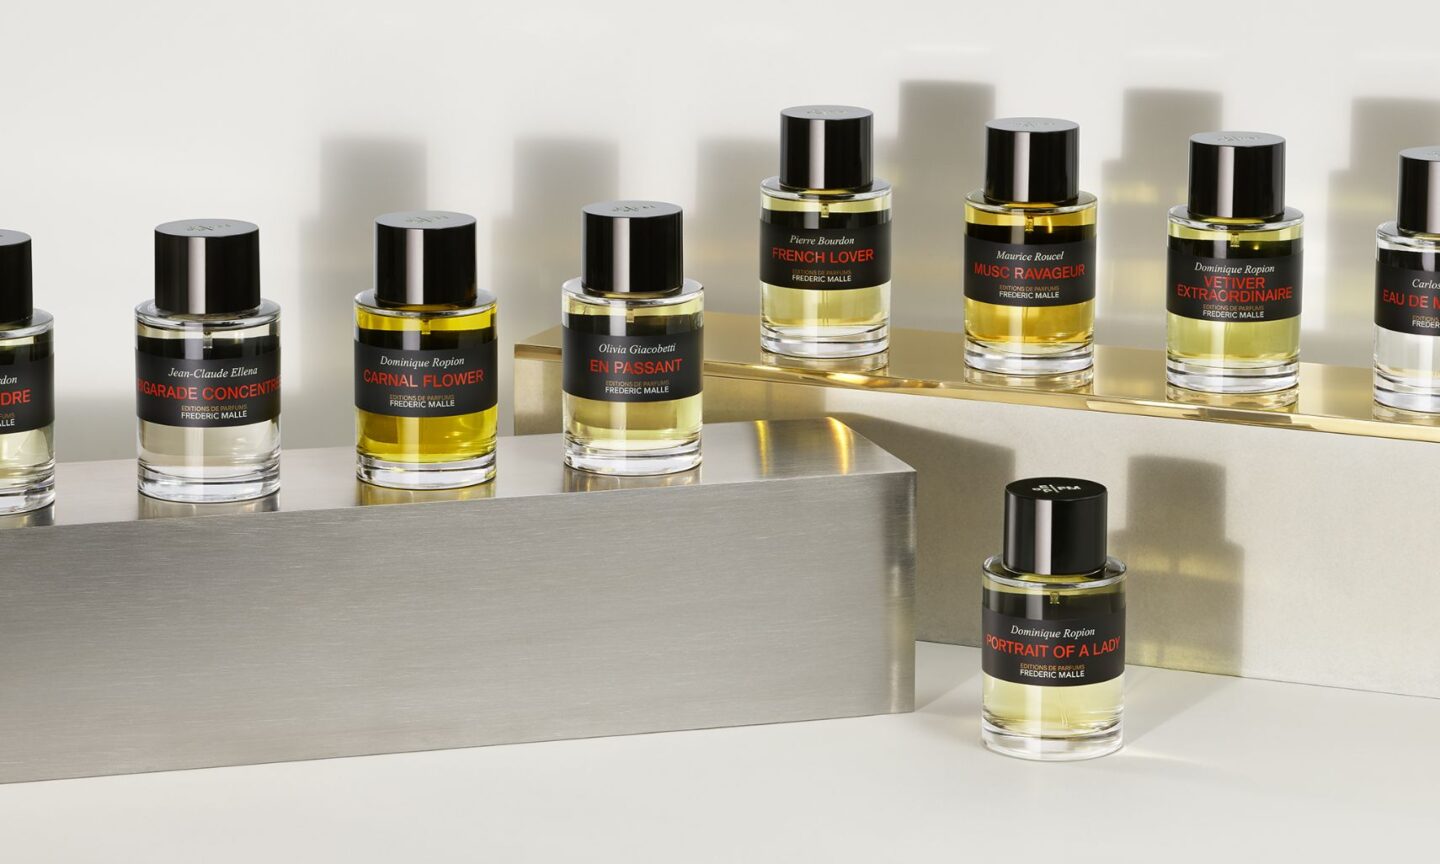 Editions de Parfums Frédéric Malle fragrance bottles